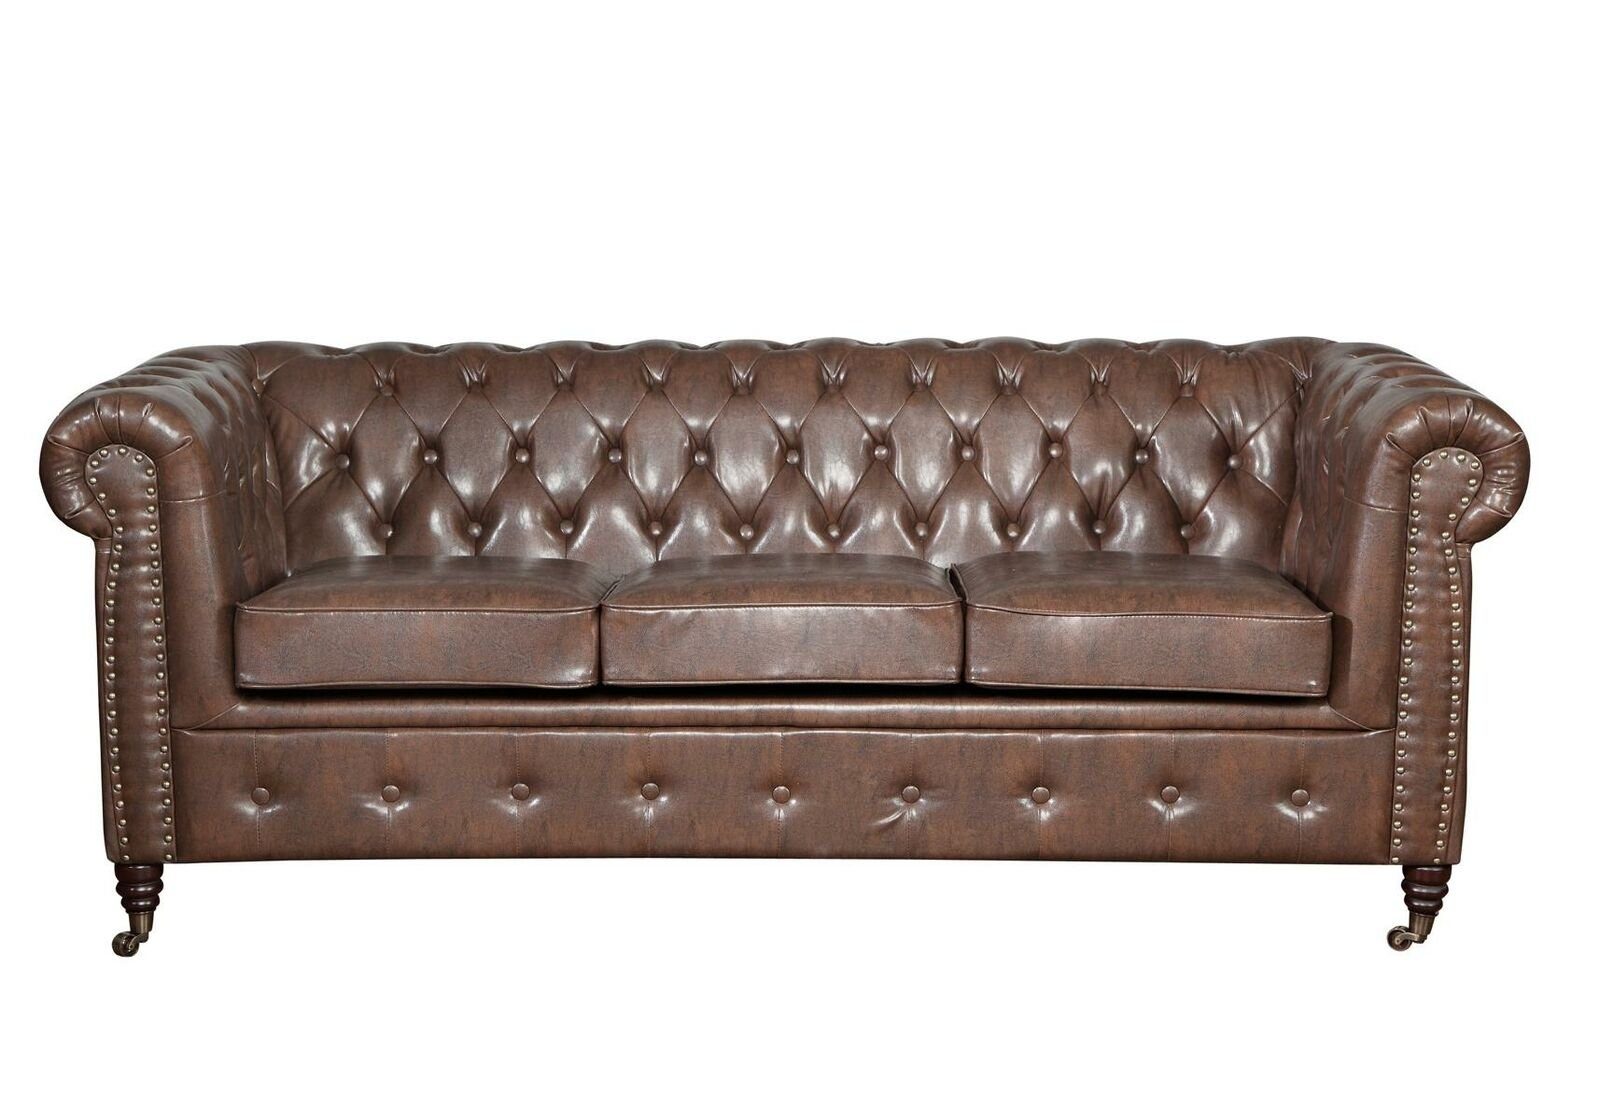 JVmoebel Sofa Klassischer Chesterfield Dreisitzer 3-Sitzer Couch Ledermöbel Neu, Made in Europe | Alle Sofas